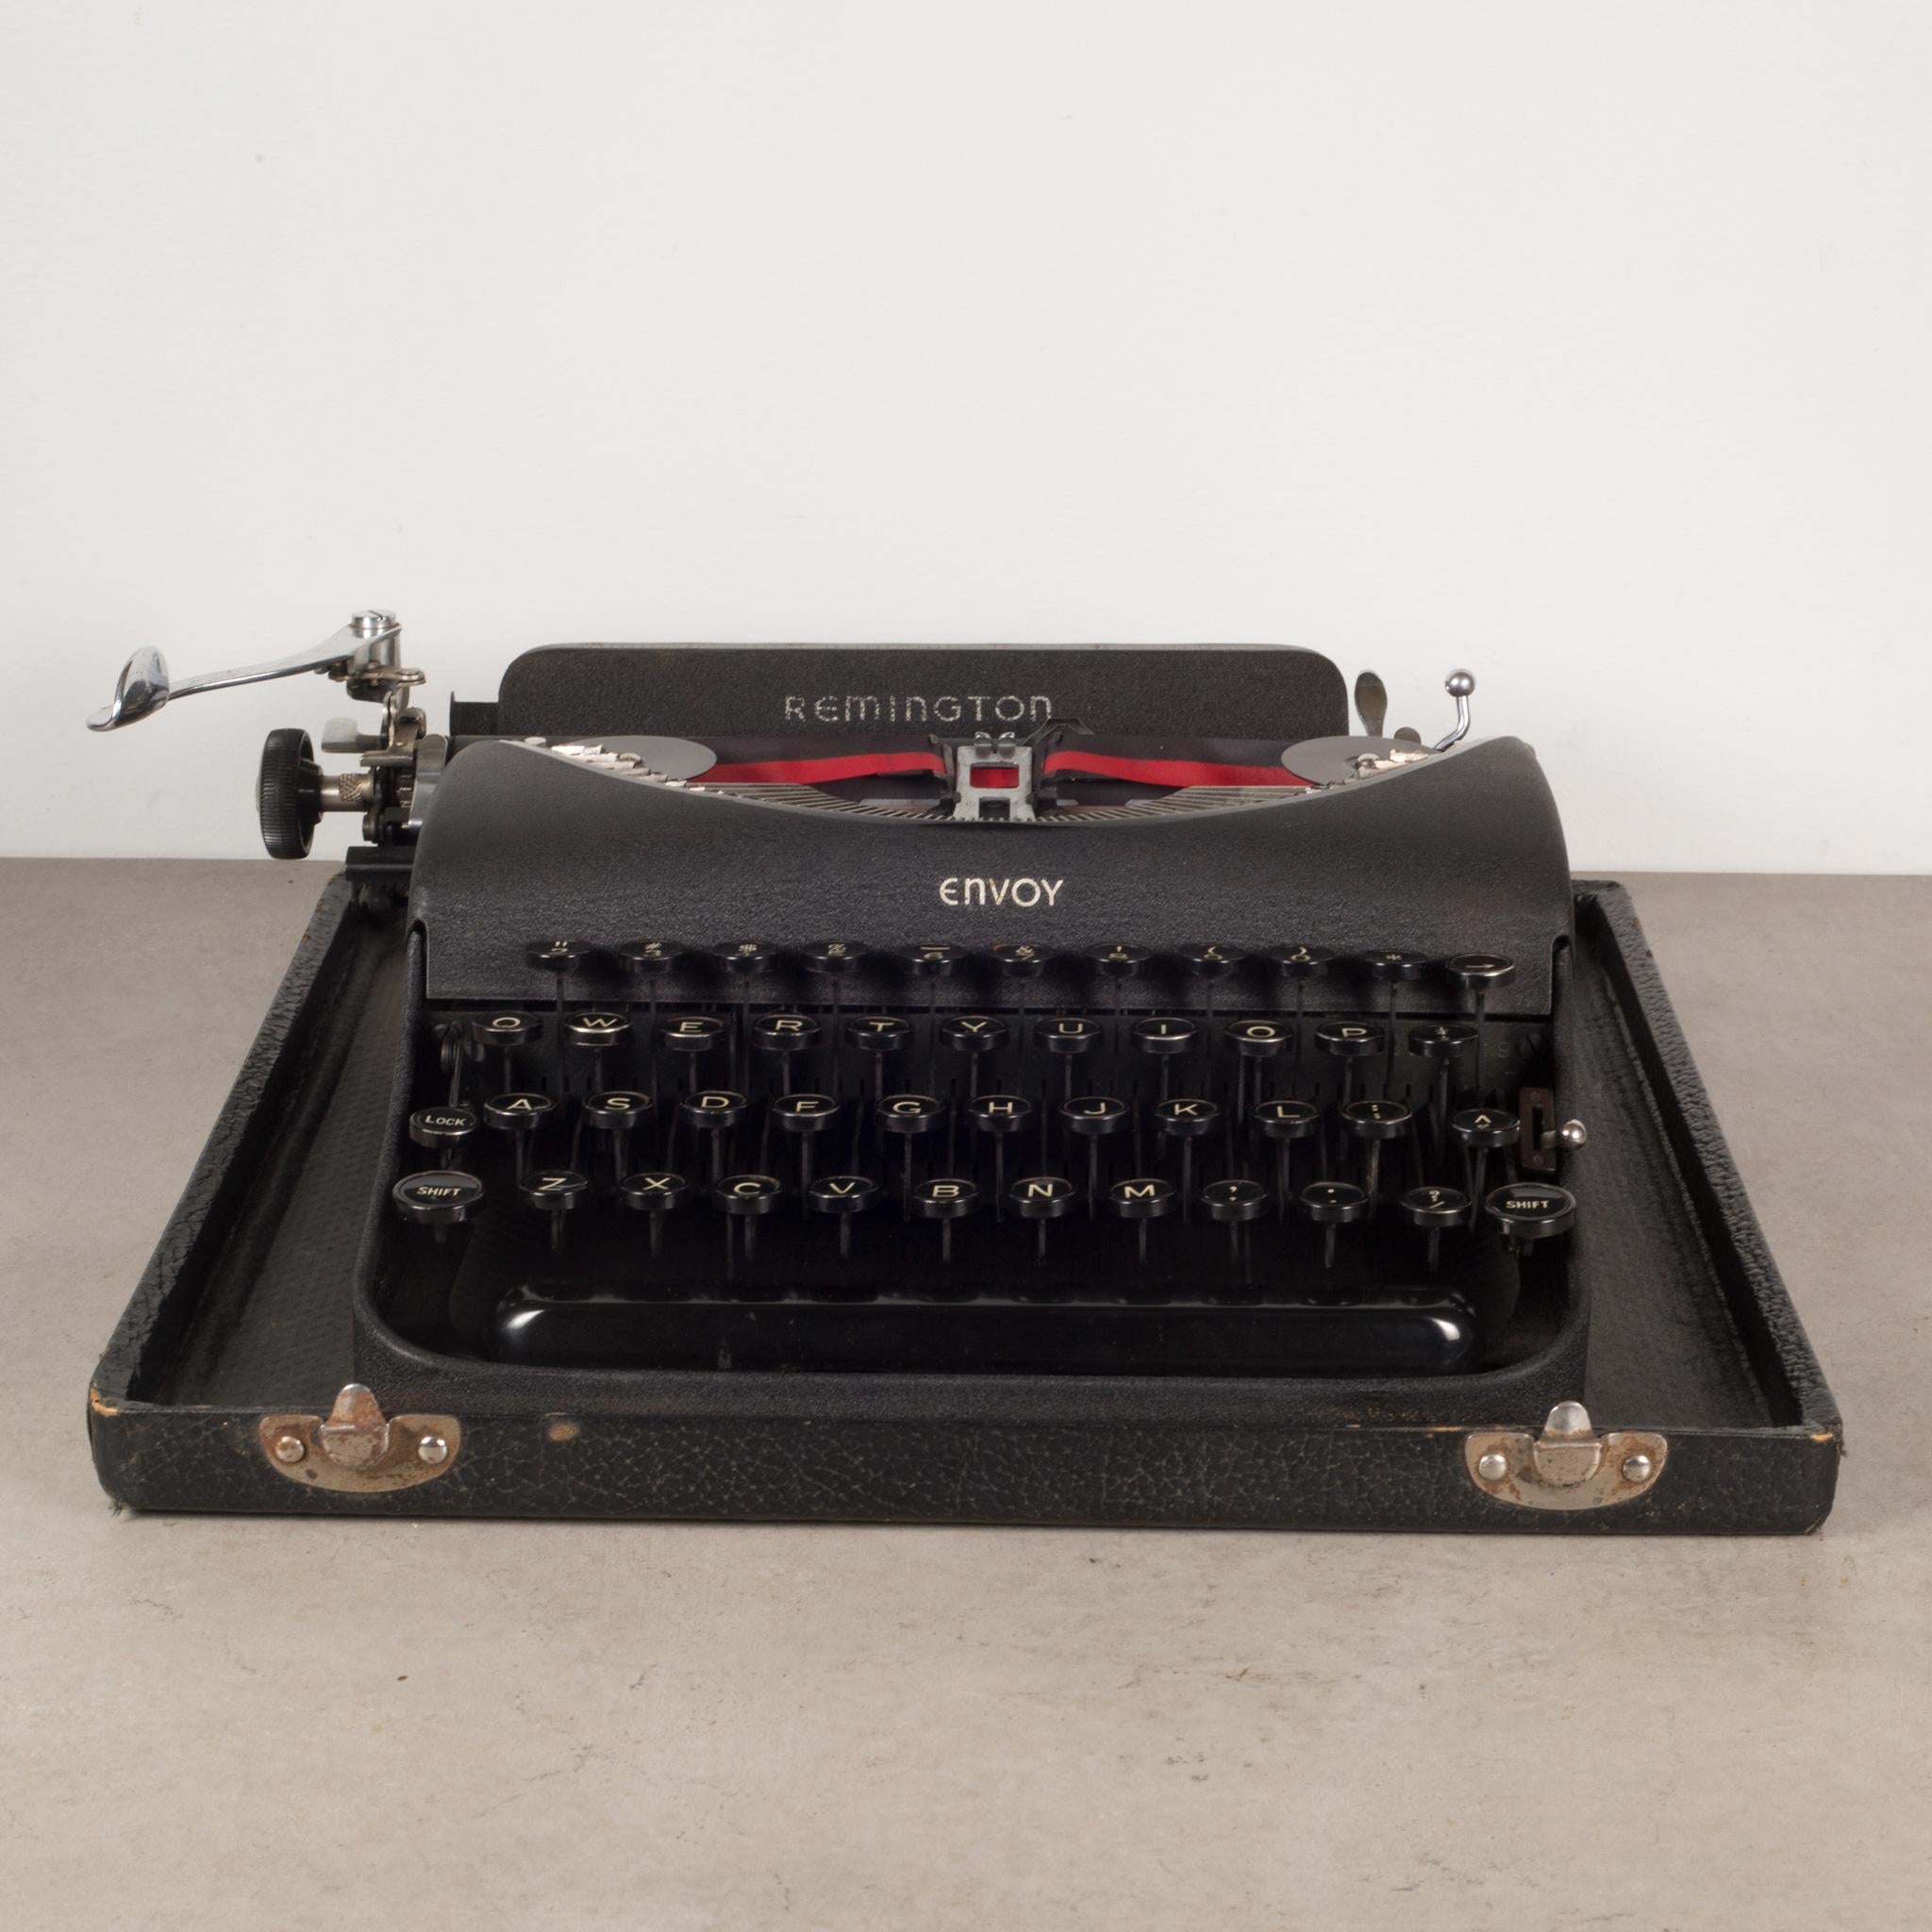 remington envoy typewriter